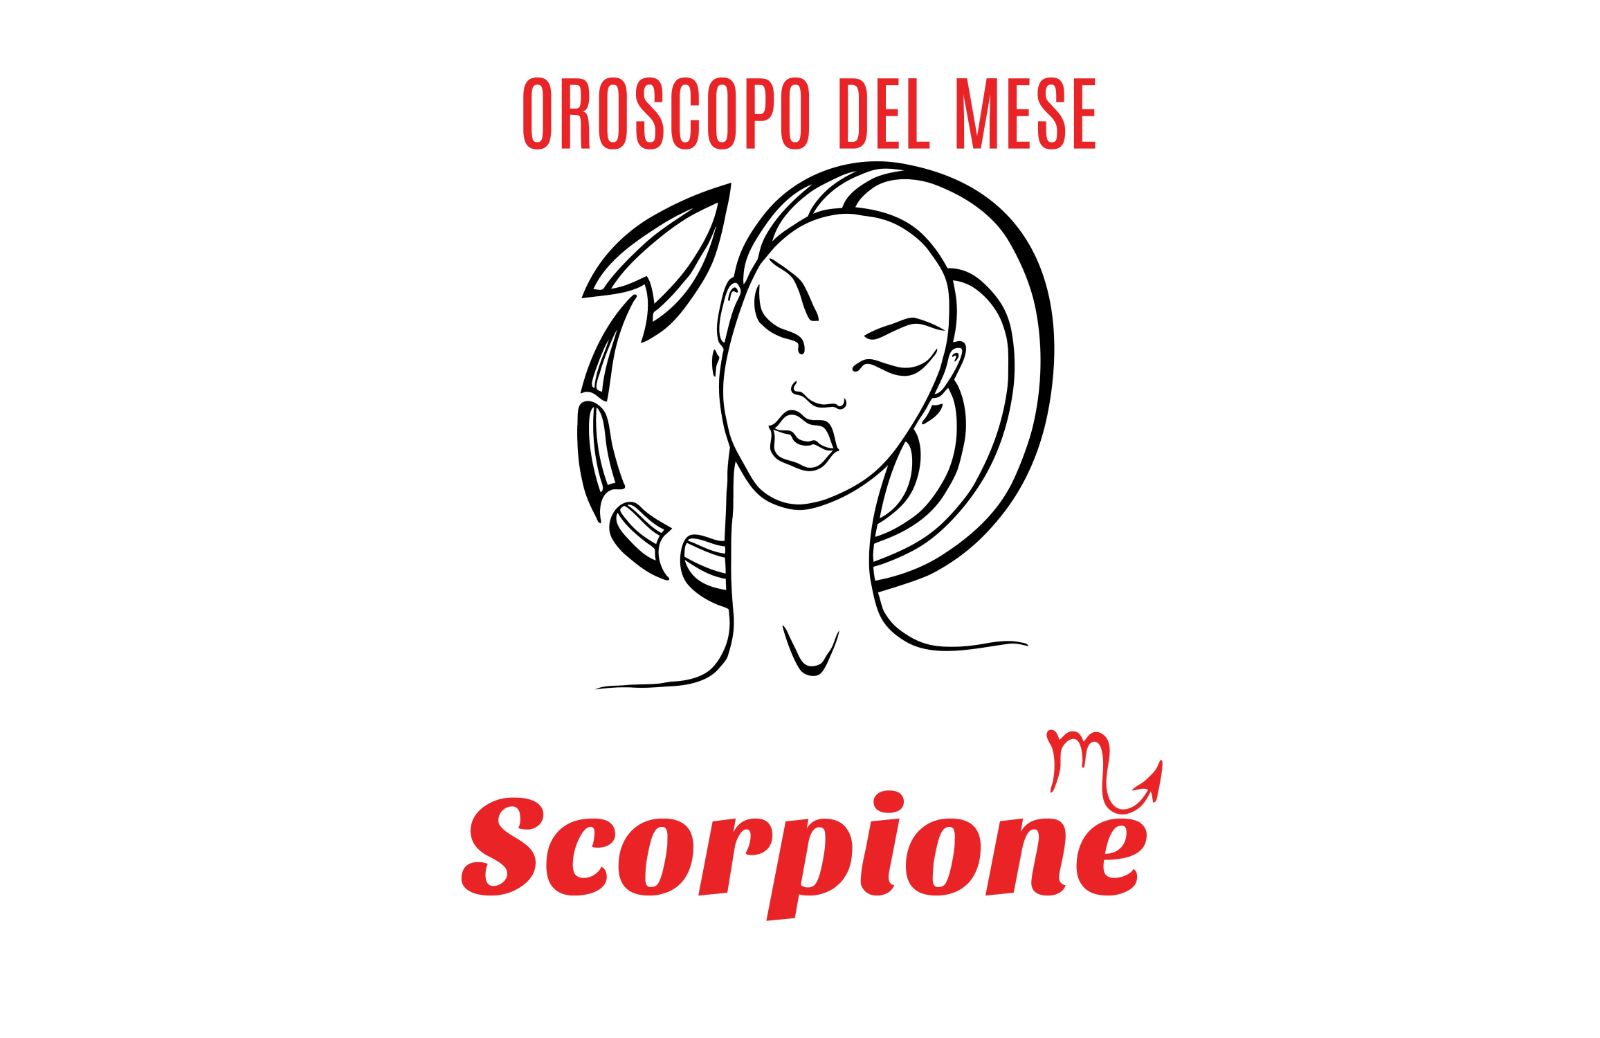 Oroscopo del mese: Scorpione - luglio 2019